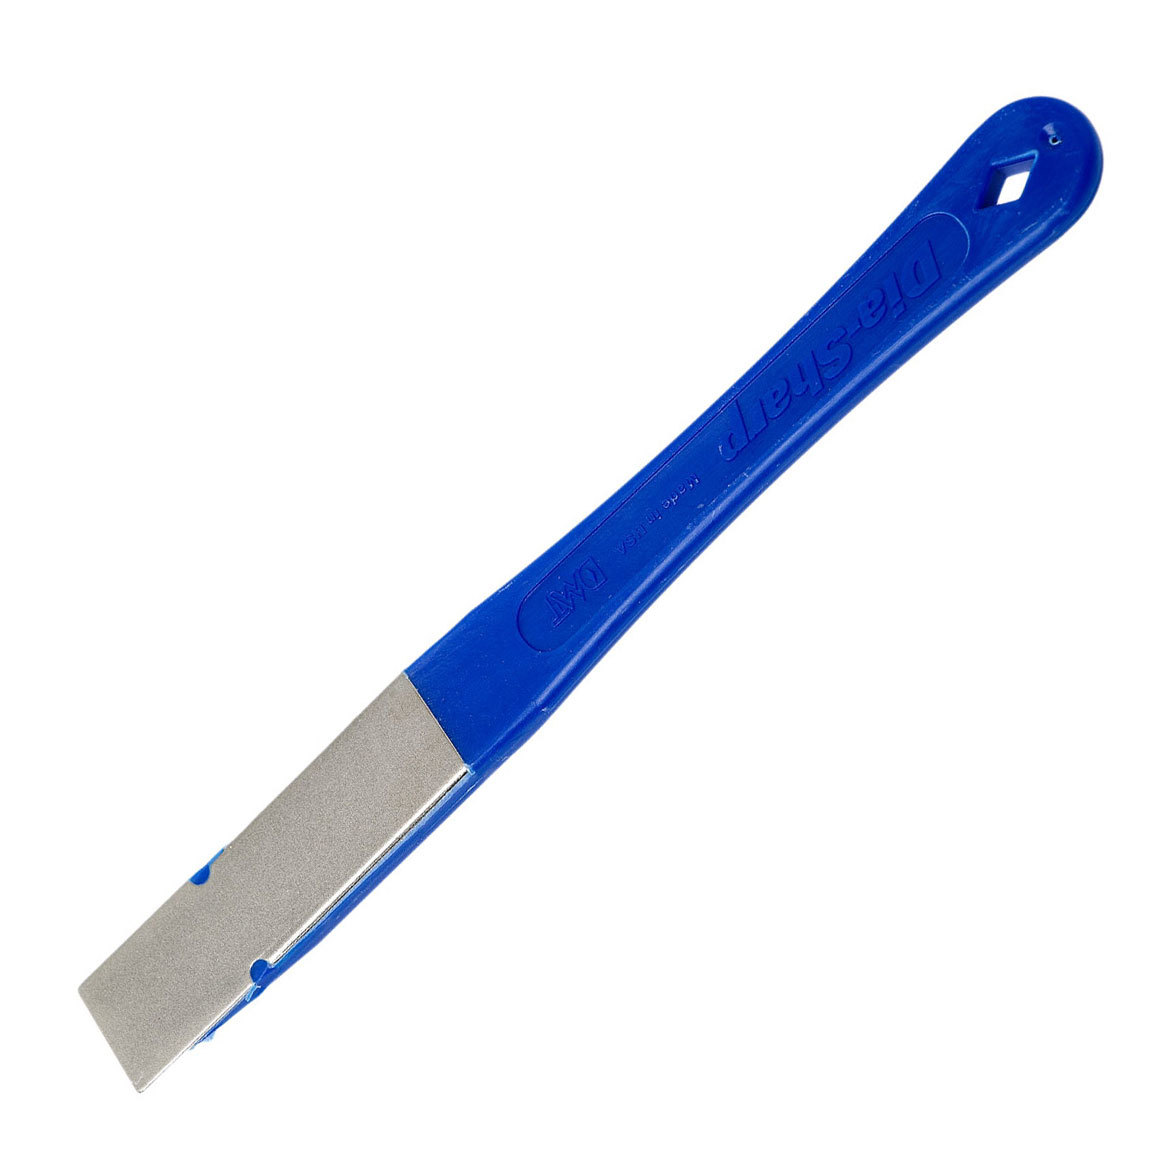 Алмазная точилка для ножей DMT® Coarse, 325 mesh, 45 micron алмазная точилка для ножей dmt® fine 600 mesh 25 micron